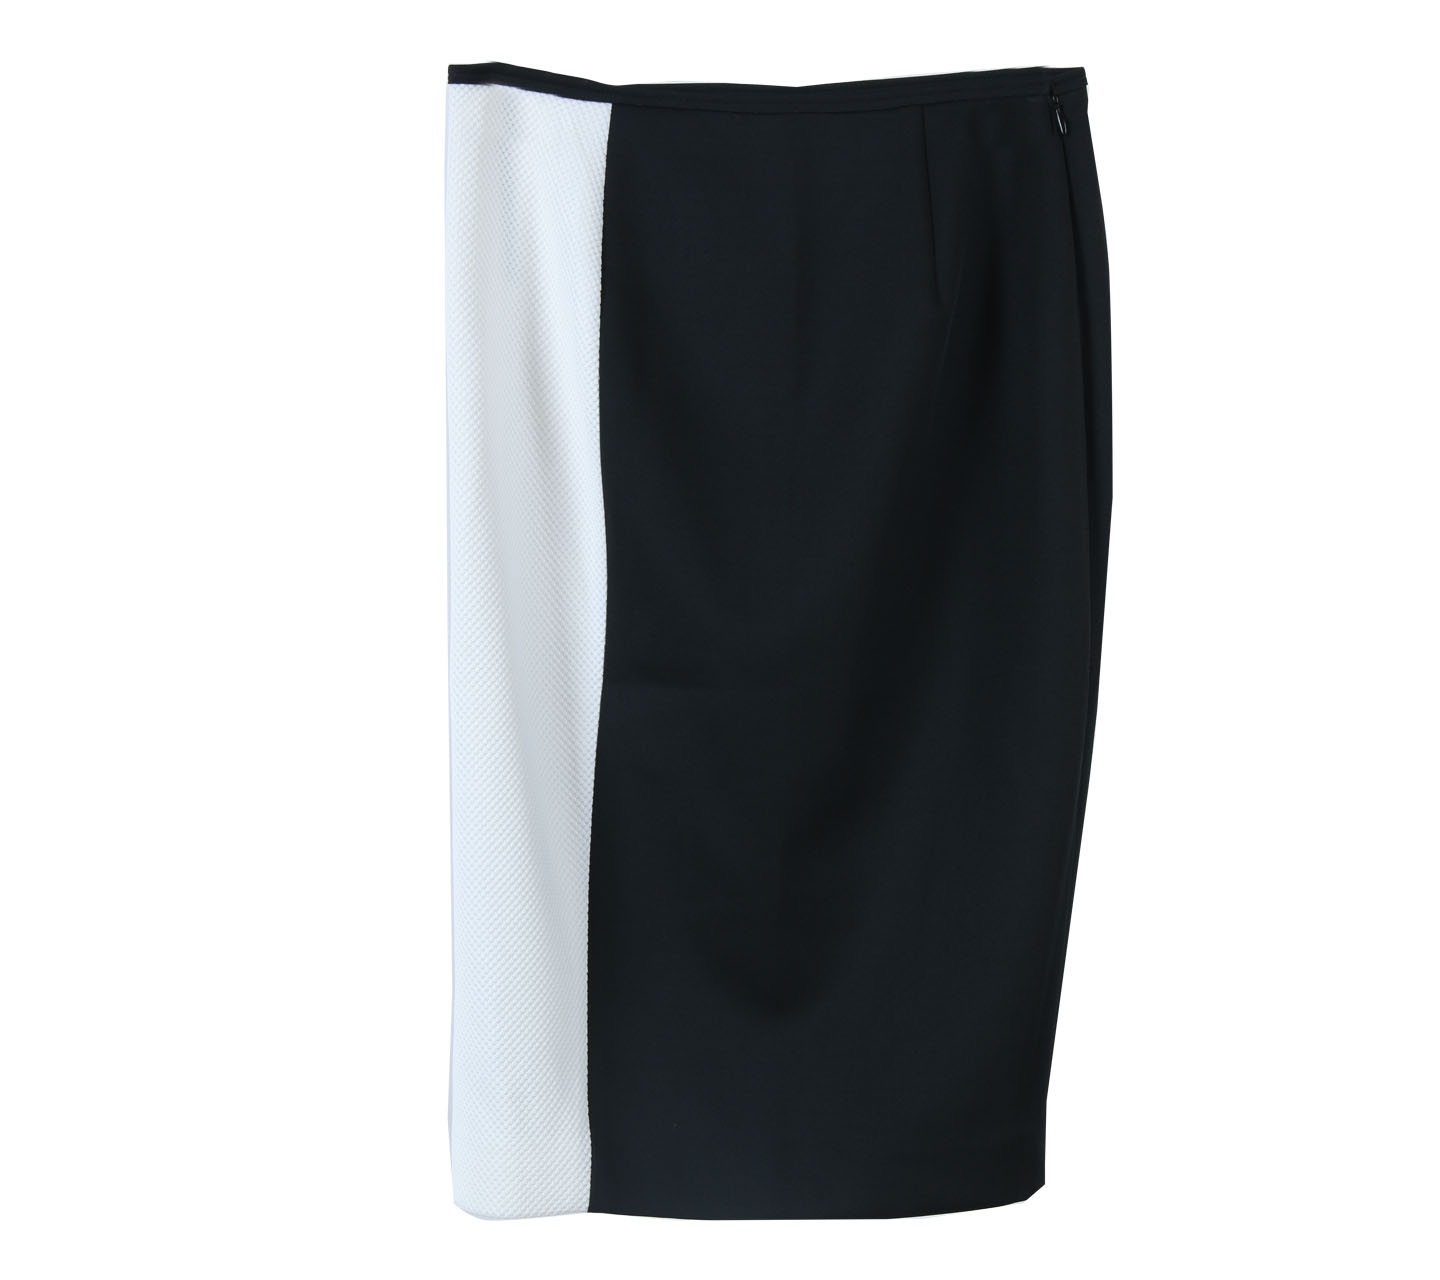 Tahari Black And White Skirt